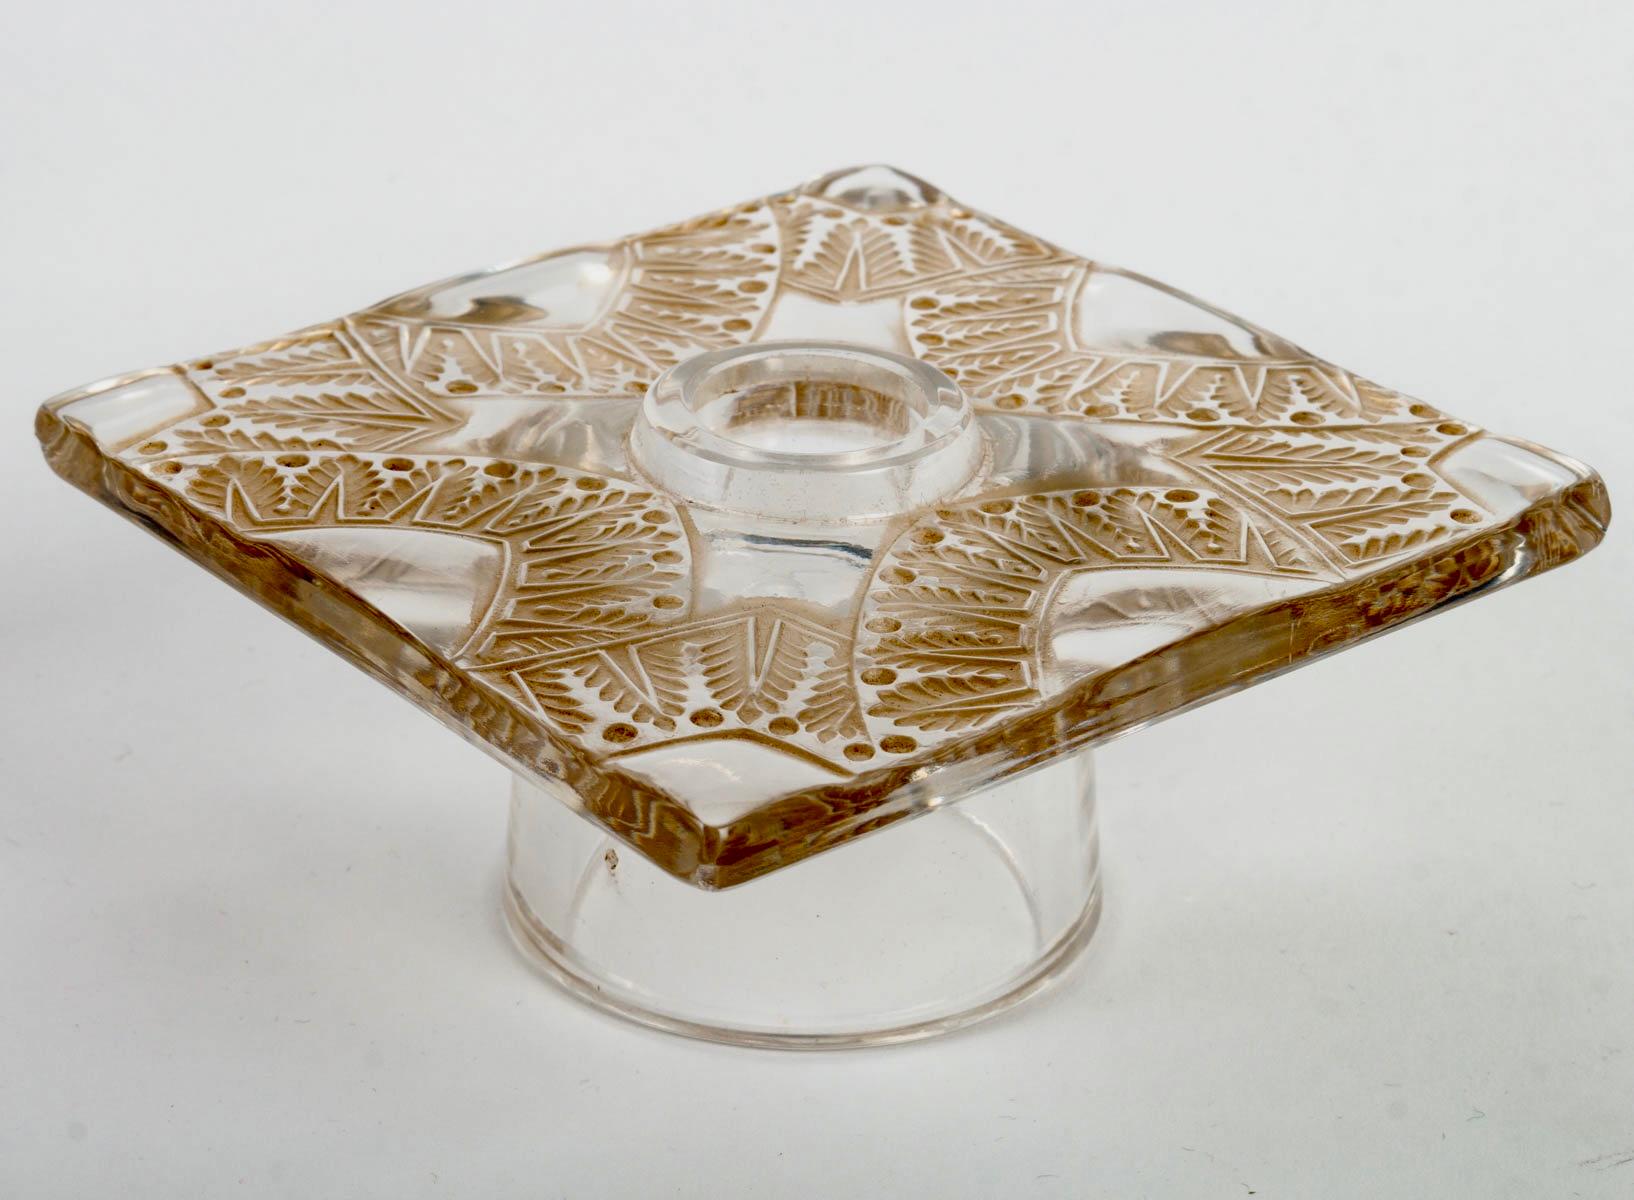 Art Glass 1942 Rene Lalique Centerpiece Chantilly Glass Sepia Stain 2 Bowls 6 Candlesticks